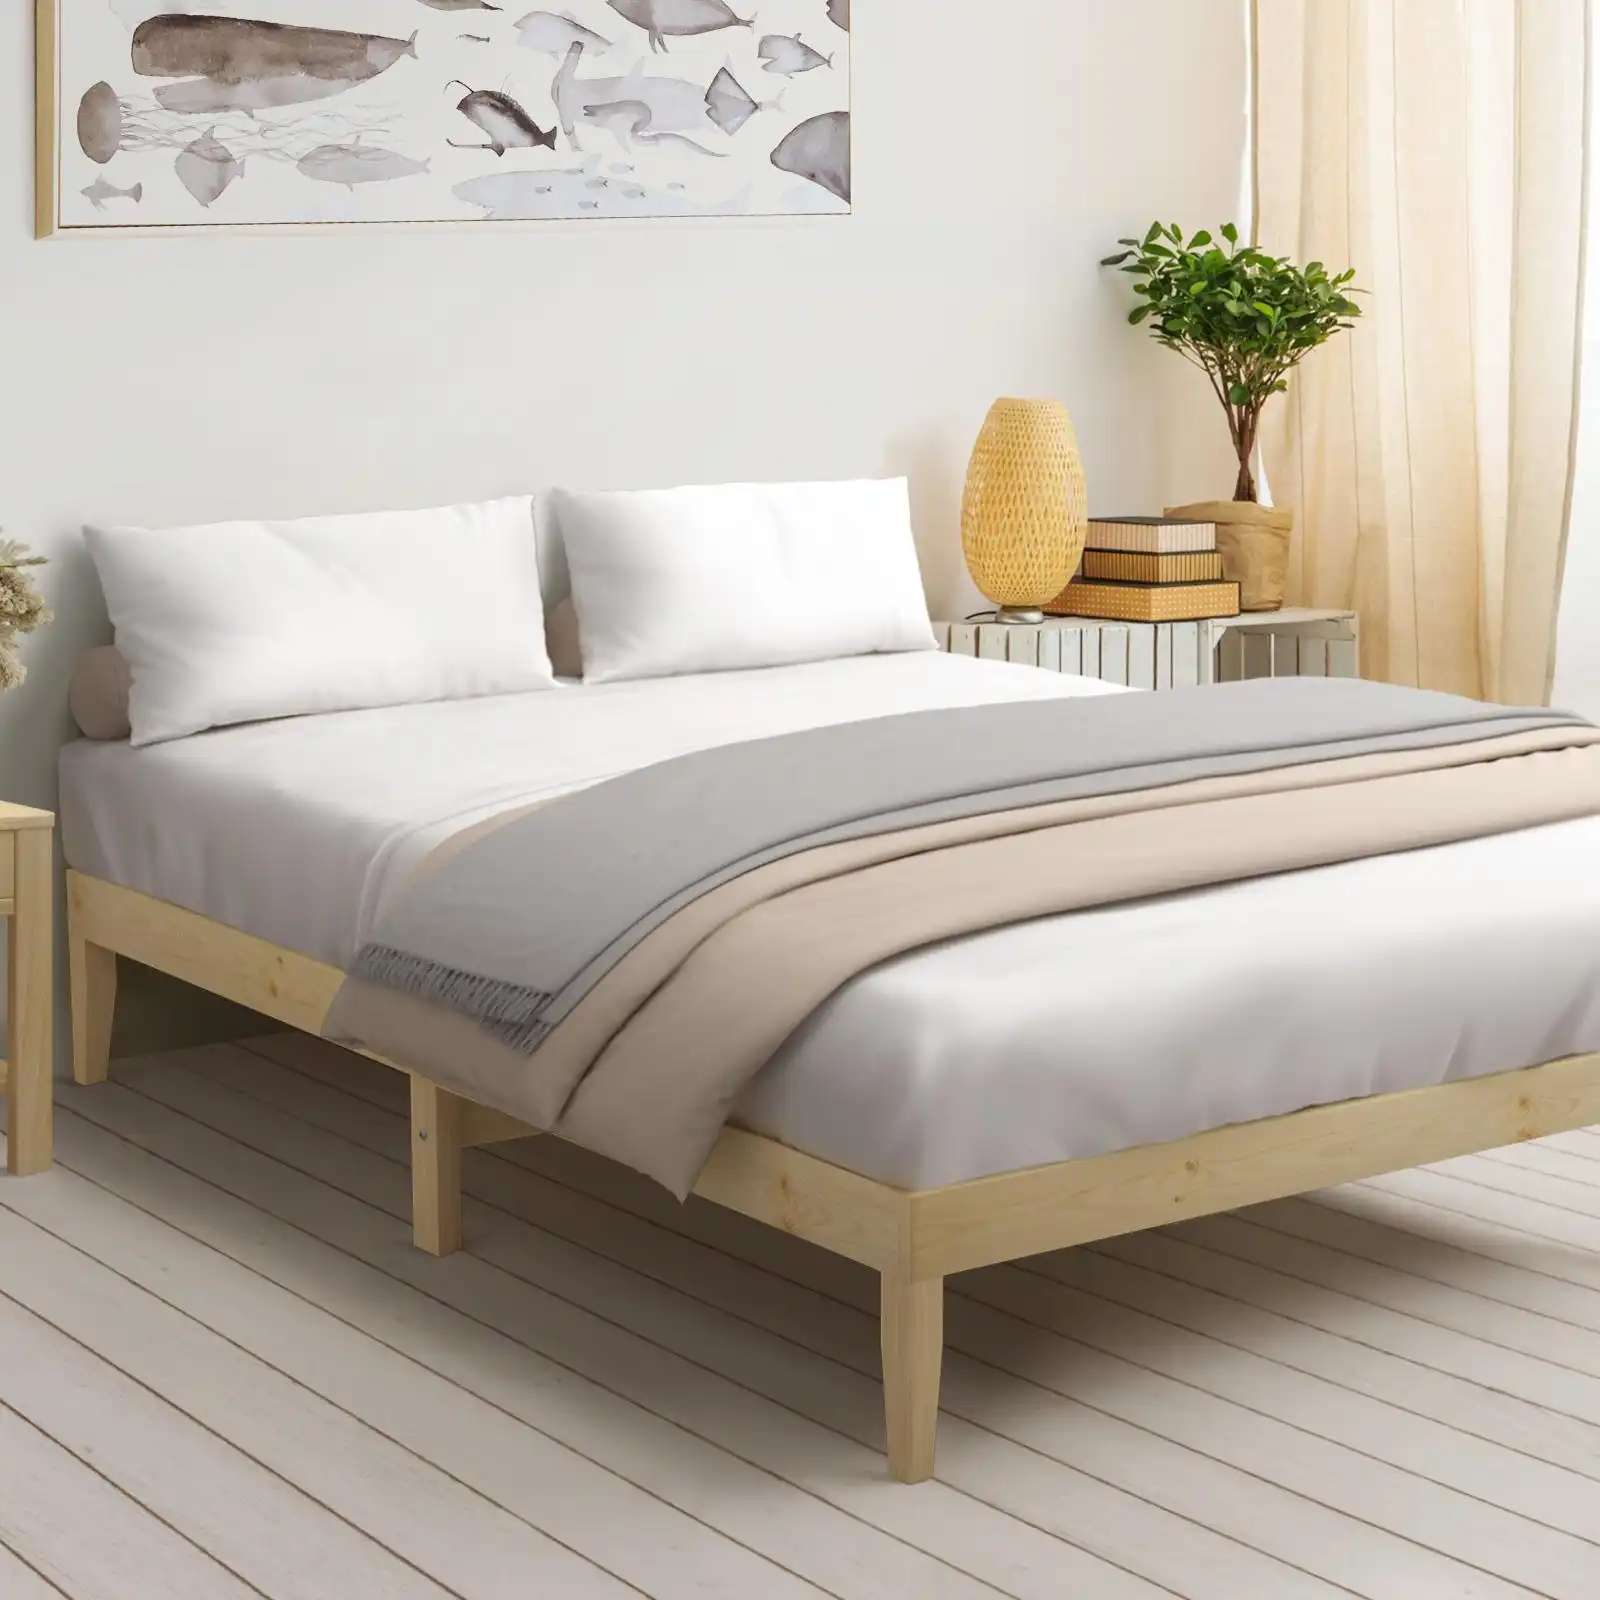 Oikiture Bed Frame King Size Wooden Timber Bed Frame Wood Mattress Base Platform